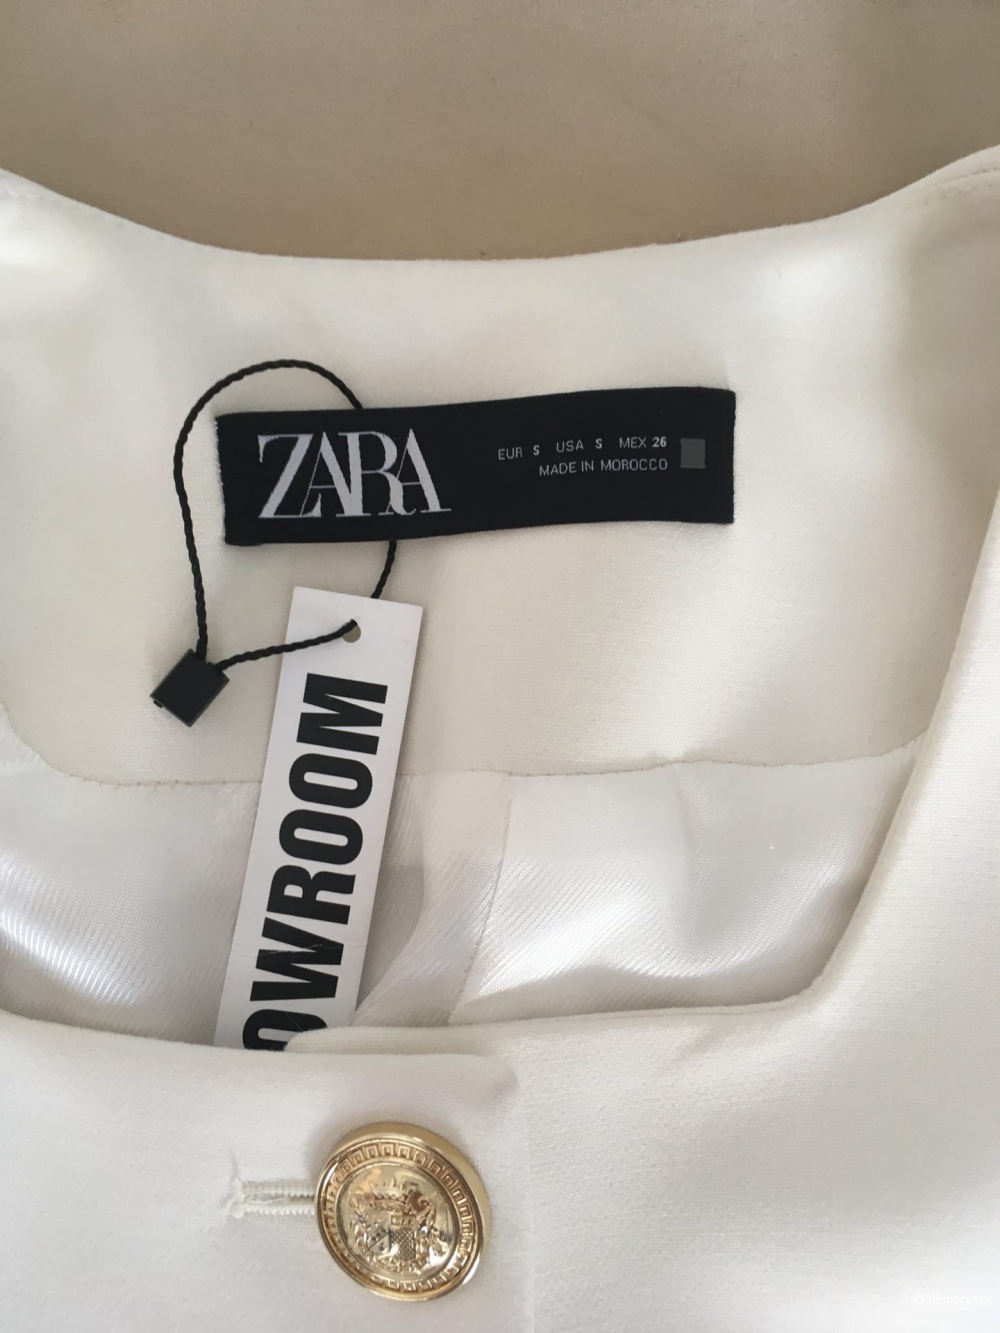 Пиджак Zara, размер S